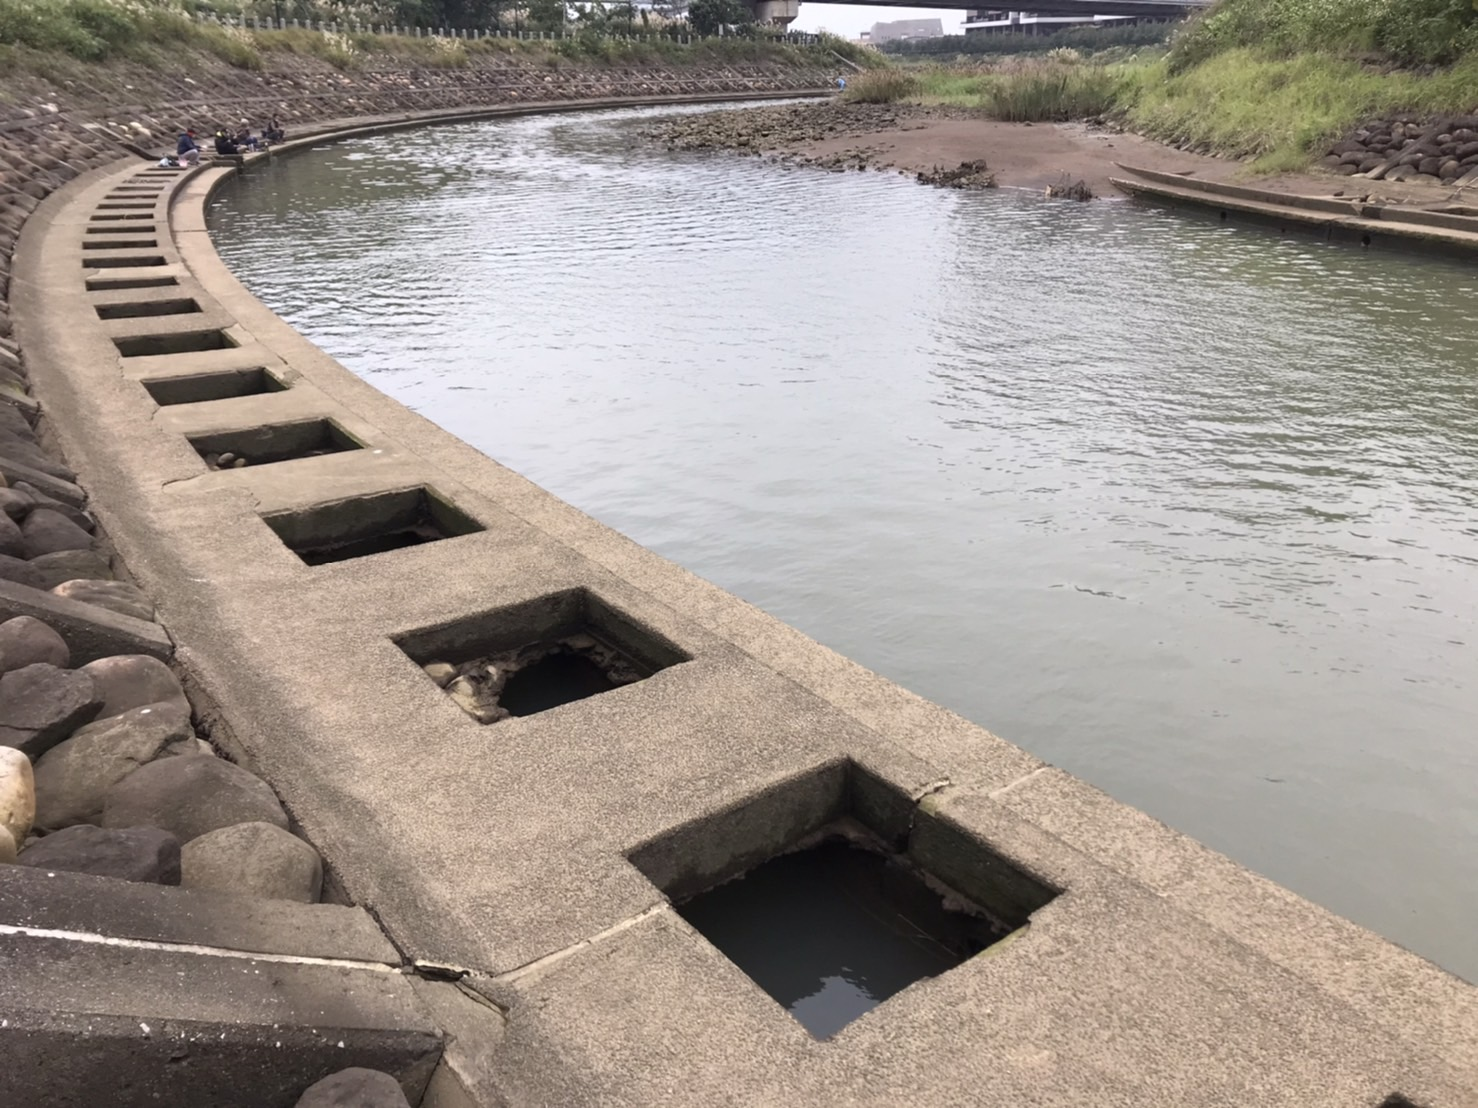 公司田溪護岸工程修復前河道淤積、護岸部分基材流失